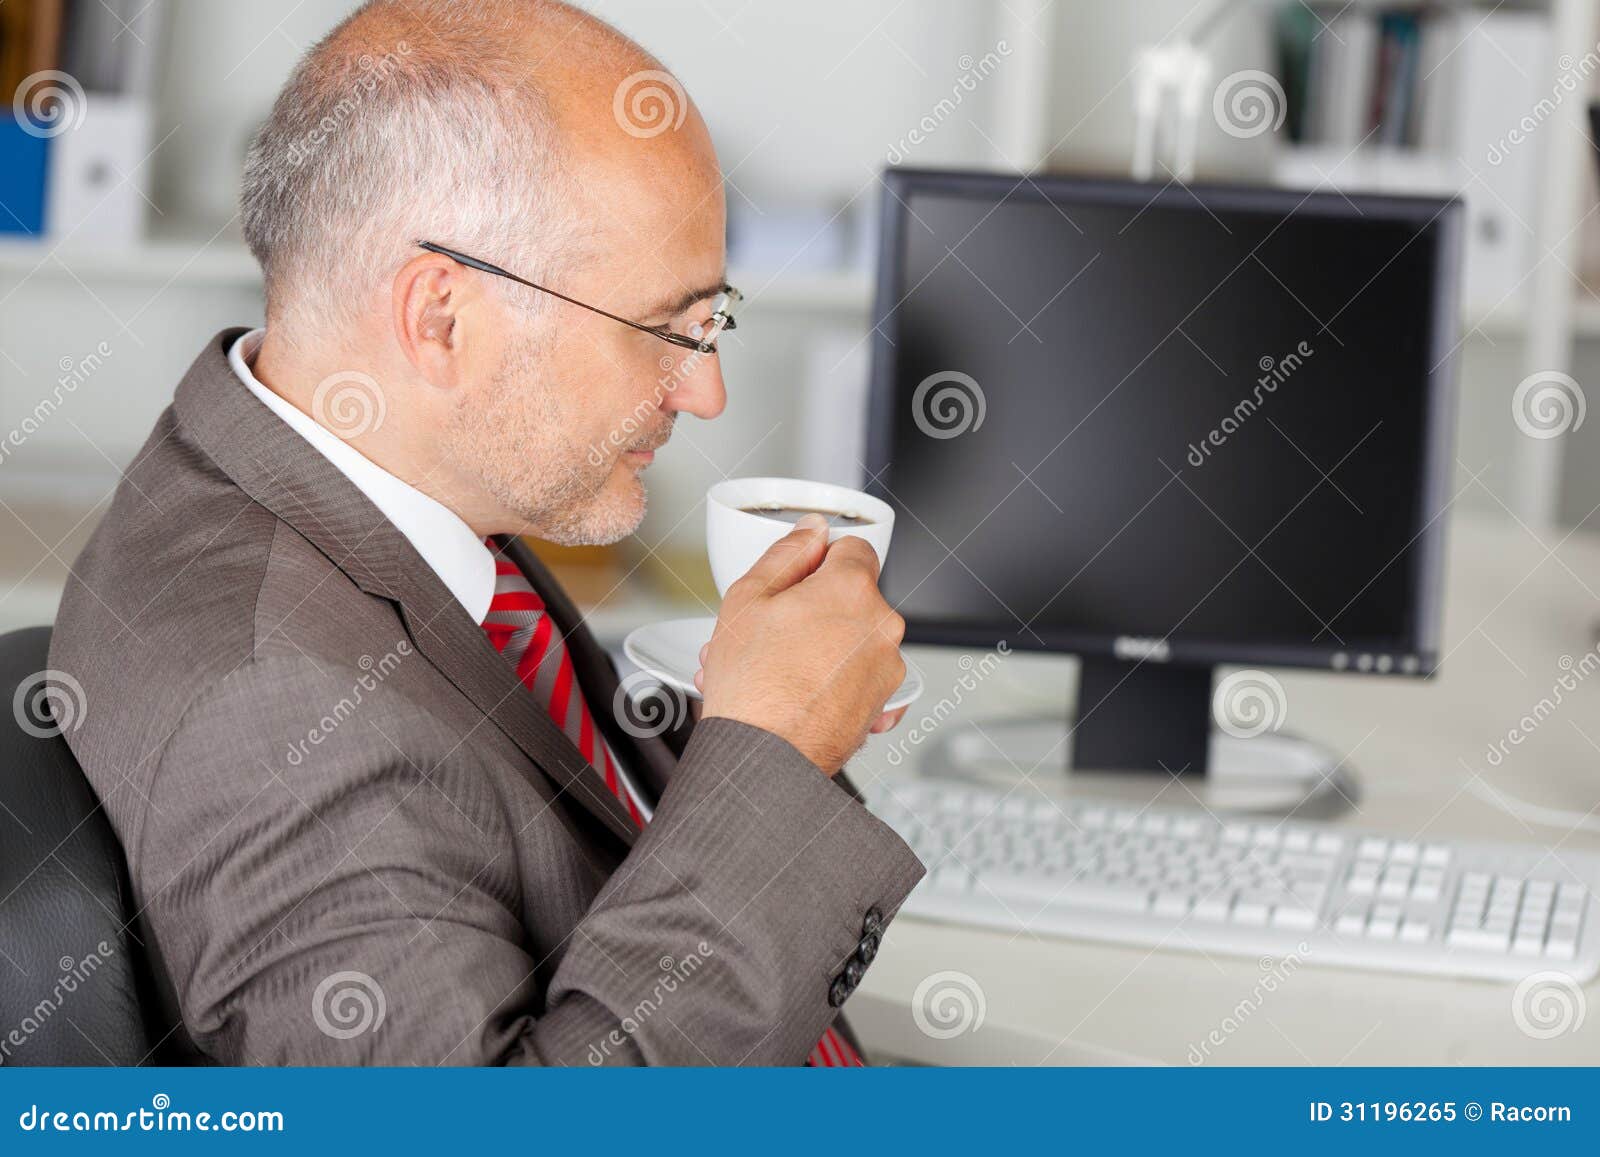 Businessman having a coffee break in the office